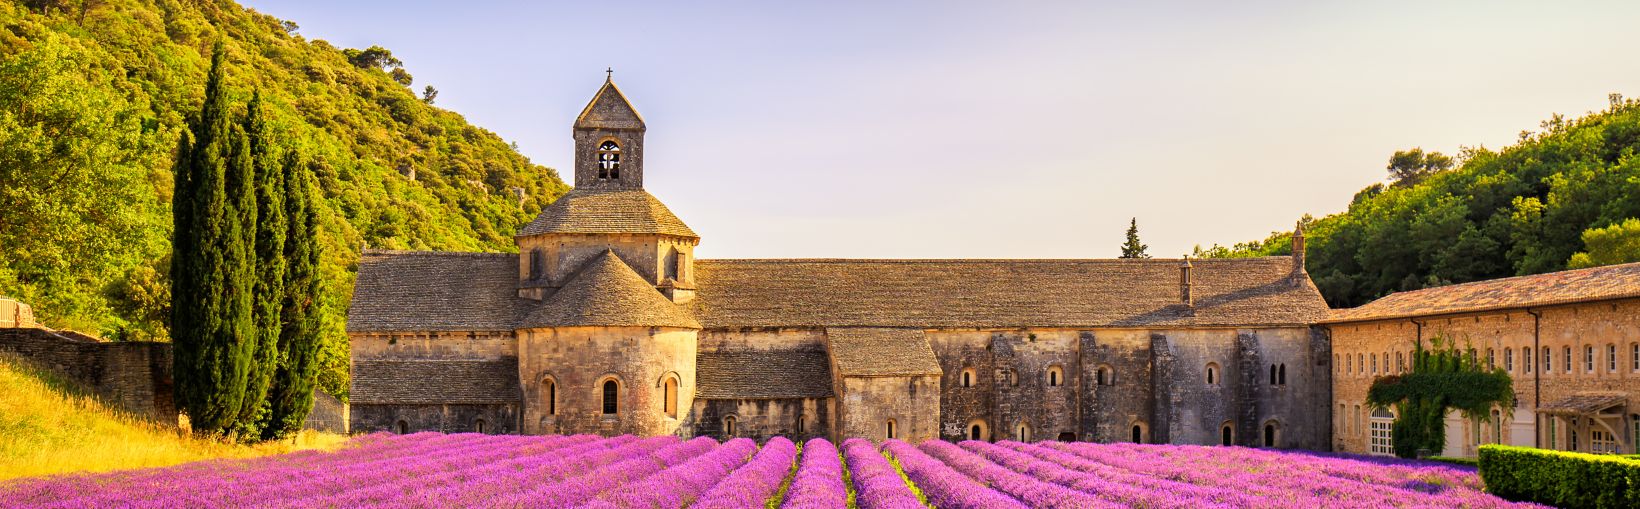 Abtei von Sénanque mit Lavendelreihen in der Provence, Frankreich